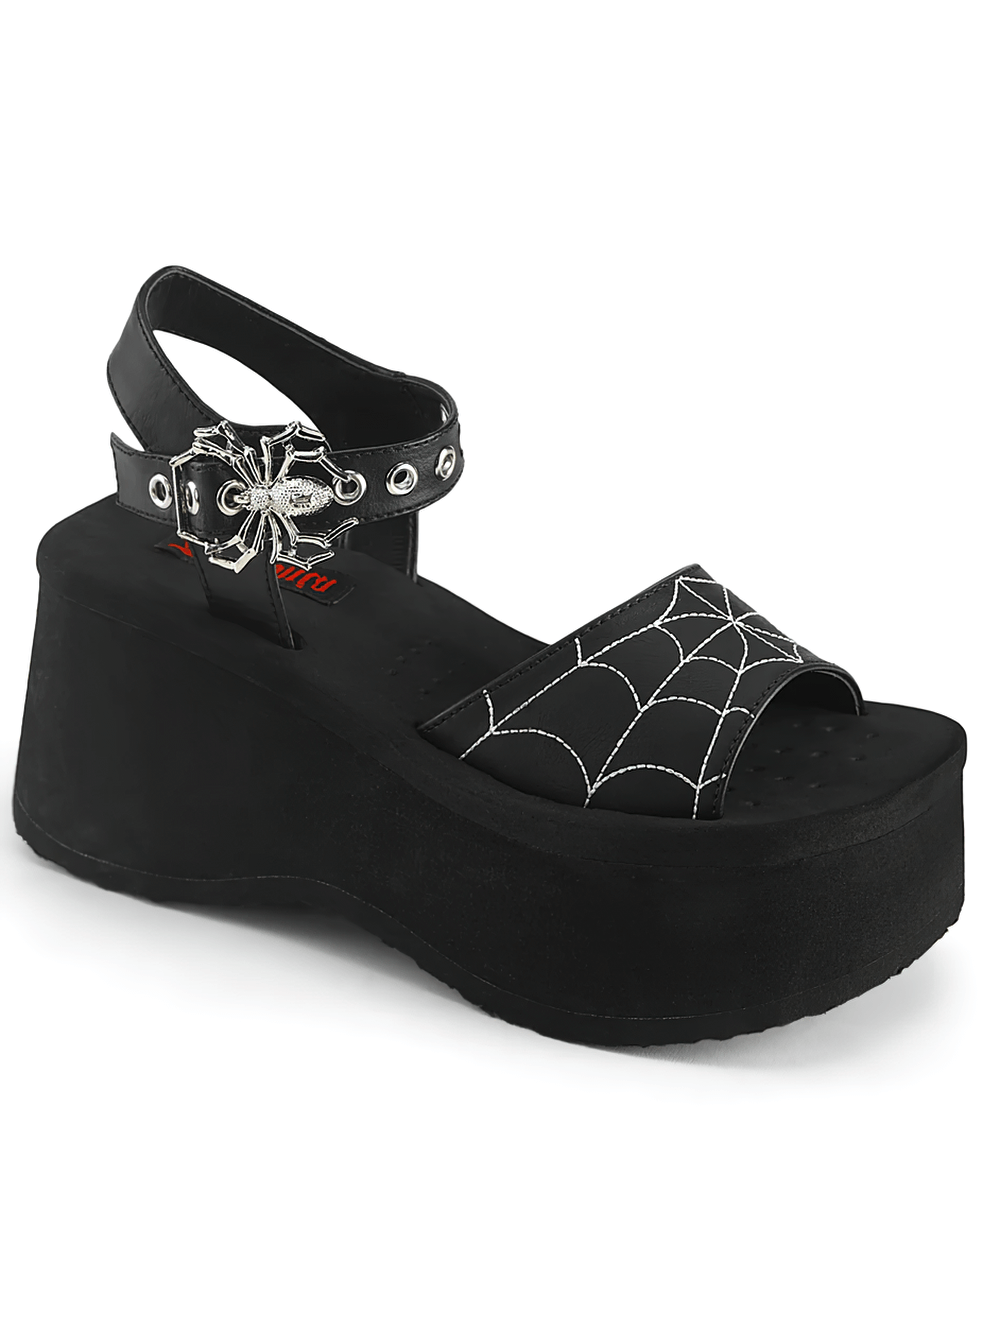 DEMONIA Spider Buckle Platform Sandals with Web Design